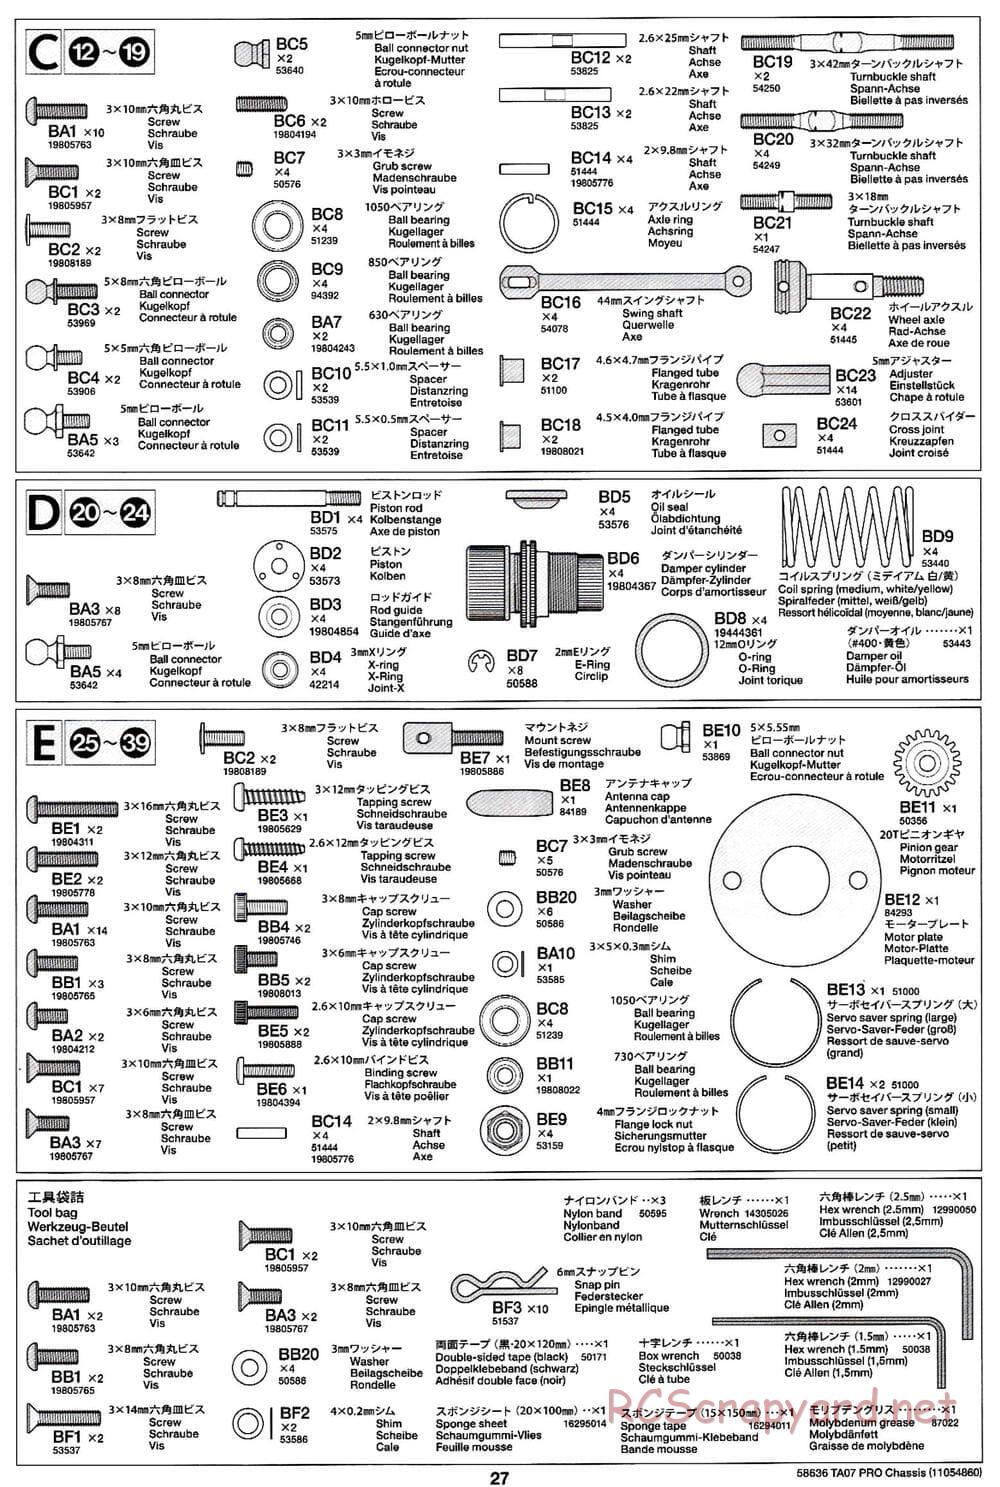 Tamiya - TA07 Pro Chassis - Manual - Page 27